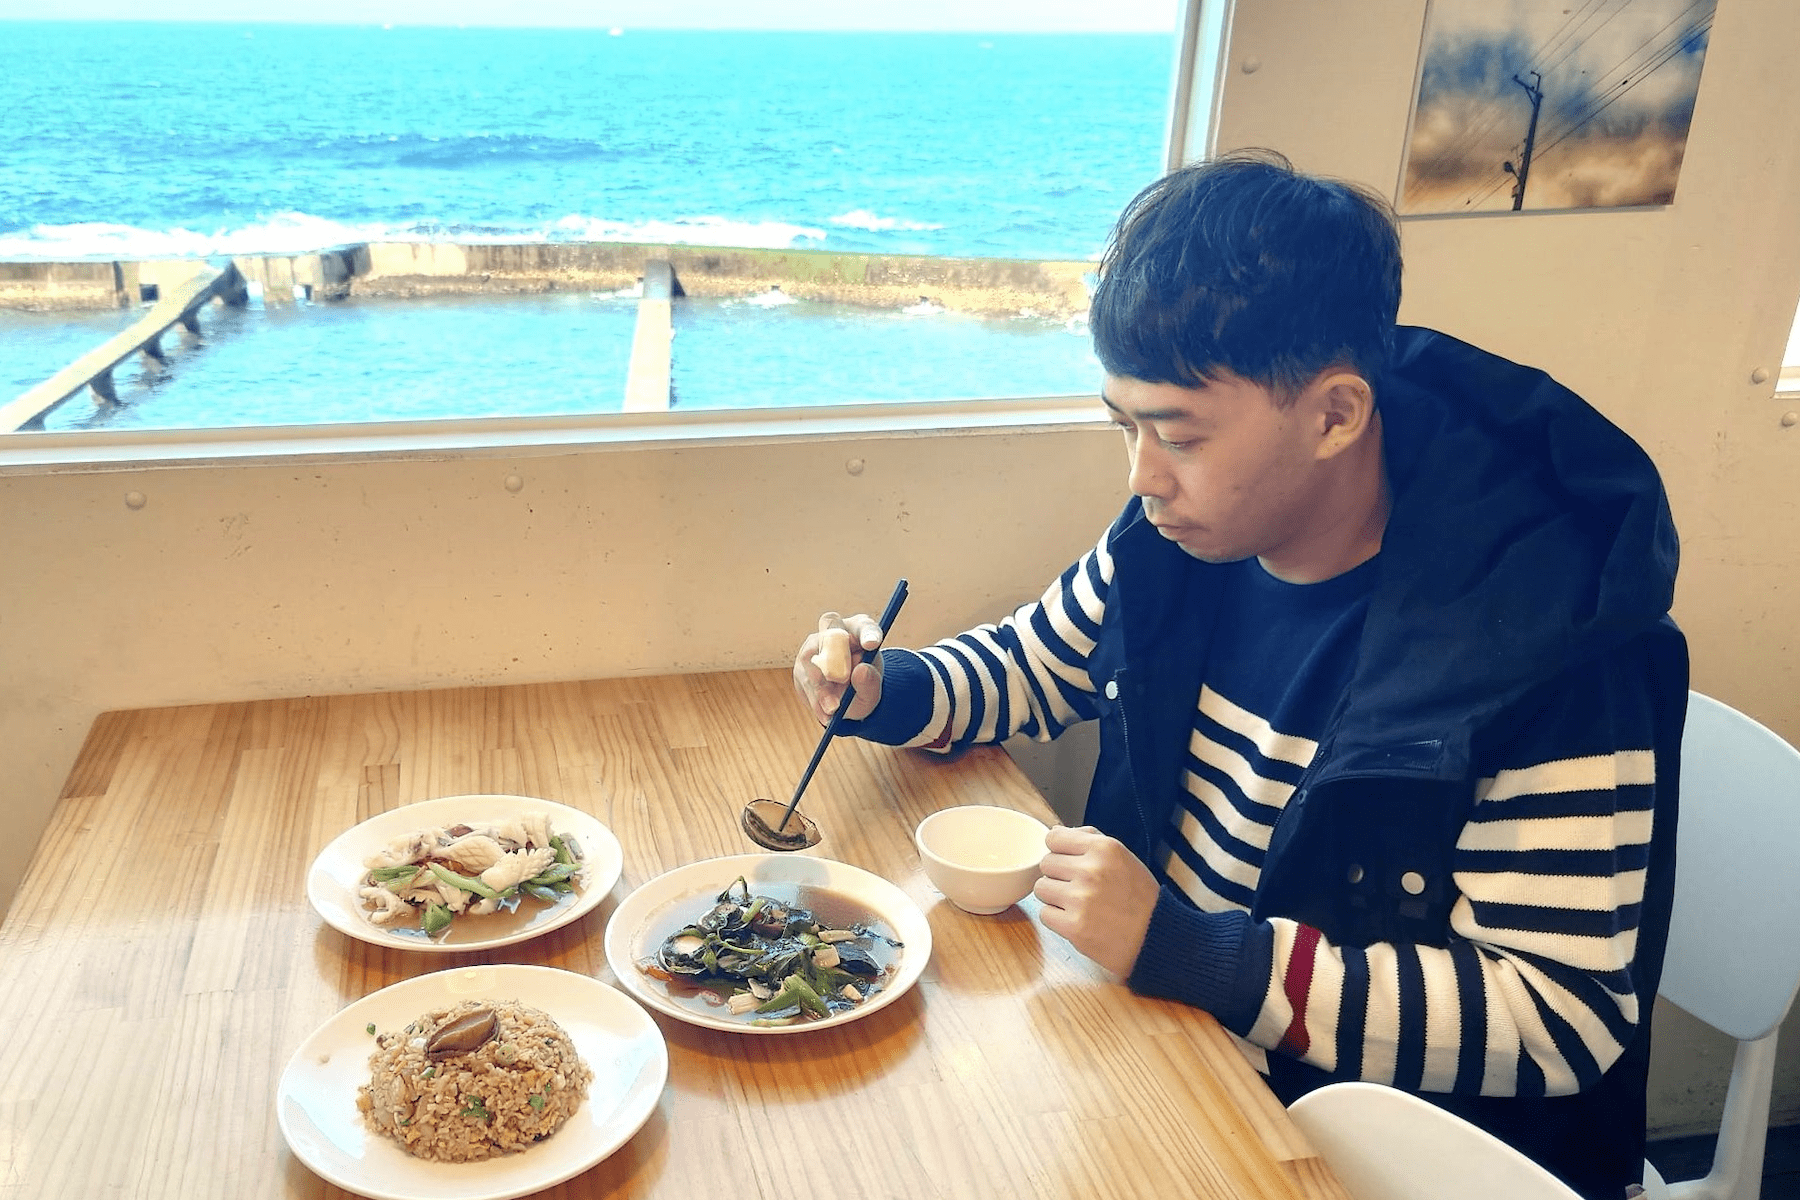 嚮往海的味道     品嚐貢寮鮑炒飯     感受海洋的美味